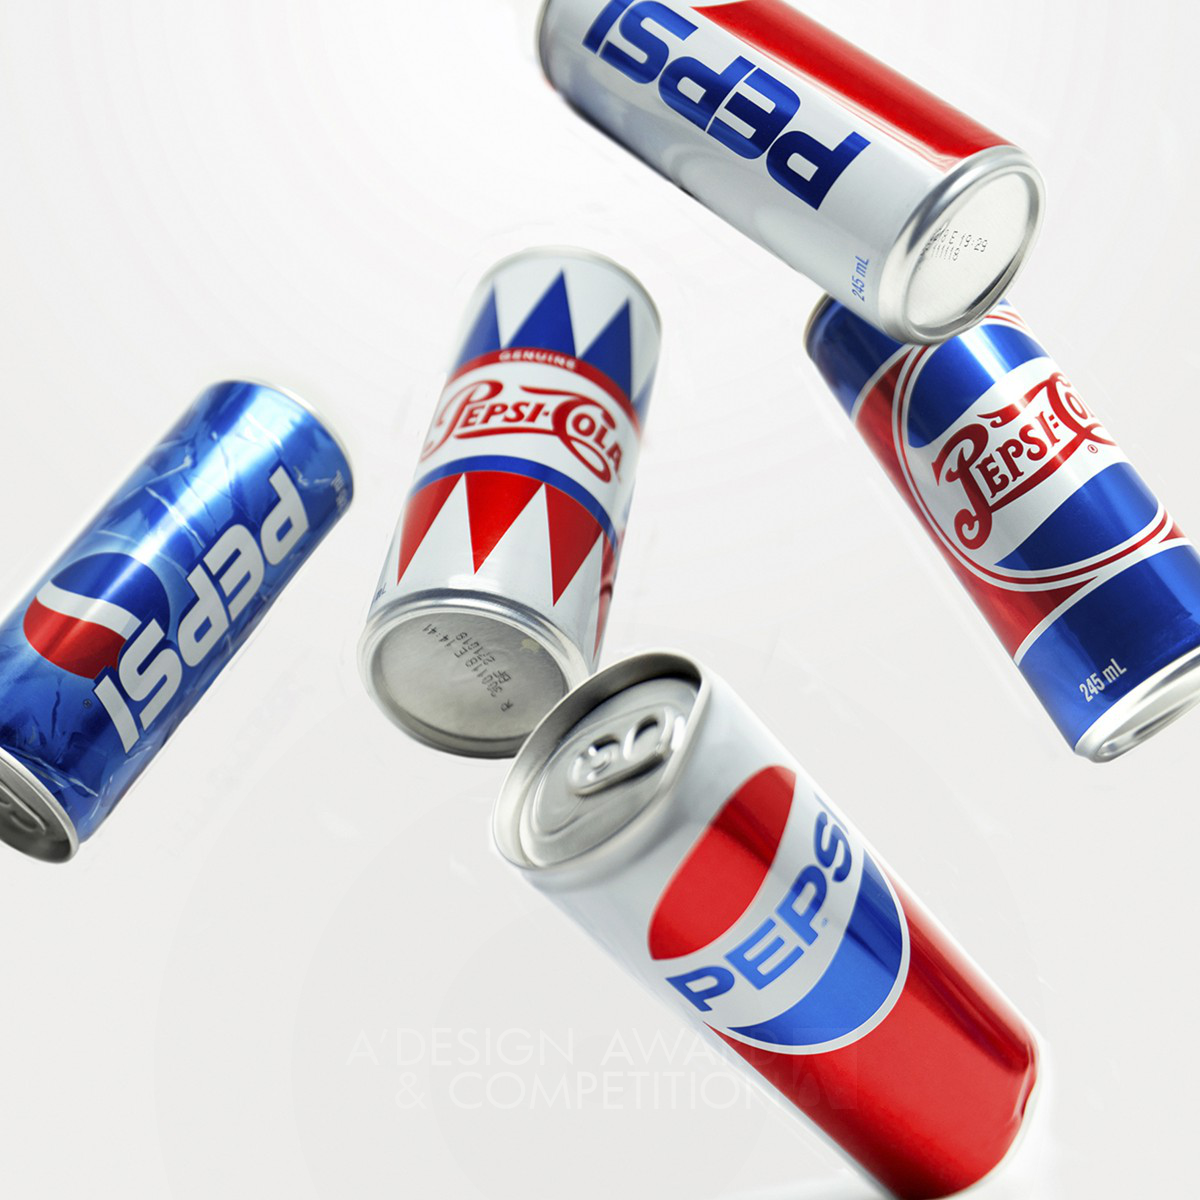 Pepsi Generations Beverage Packaging